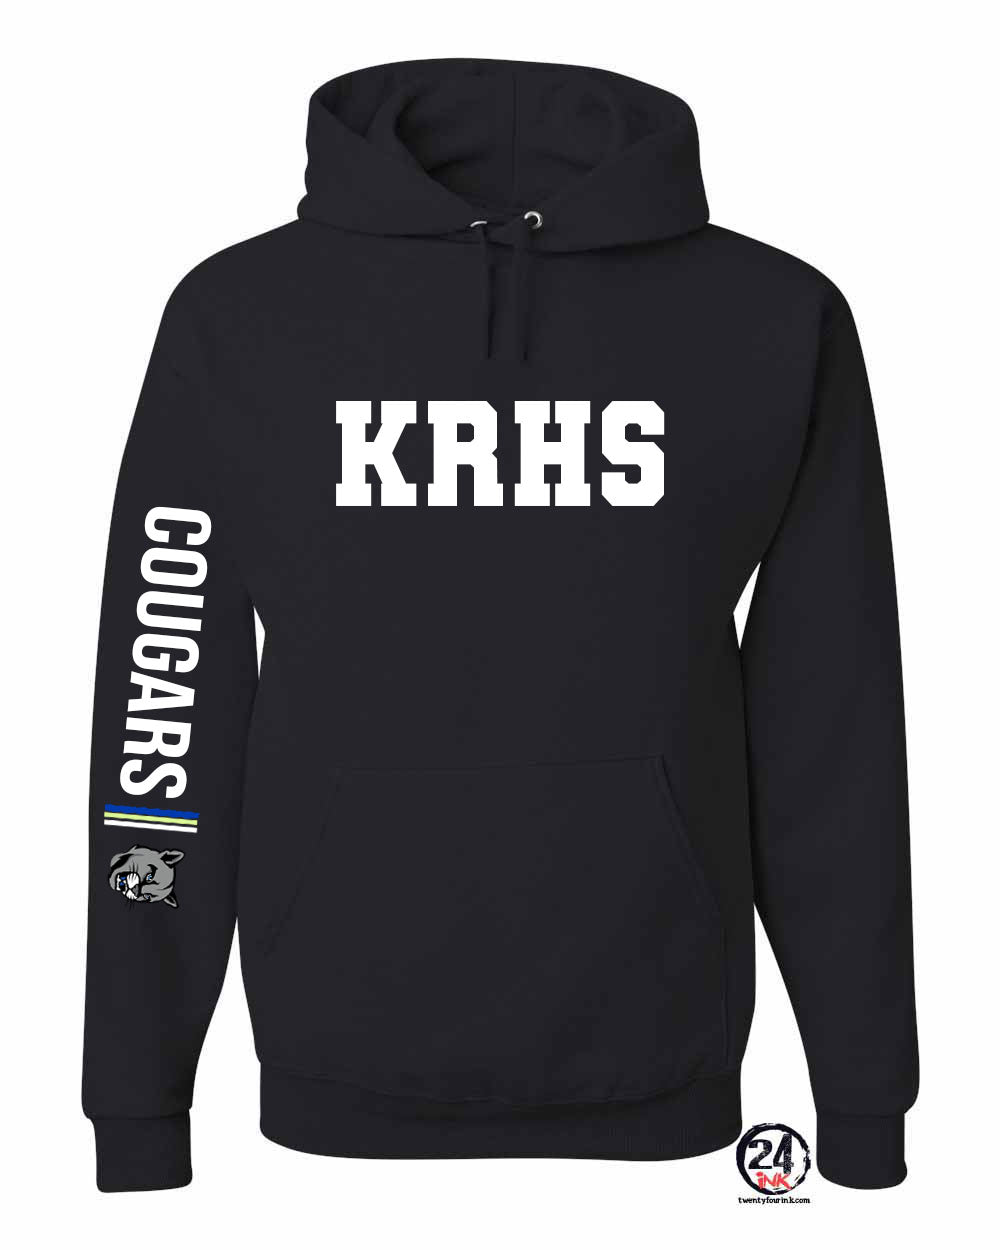 KRHS Design 5 Hooded Sweatshirt